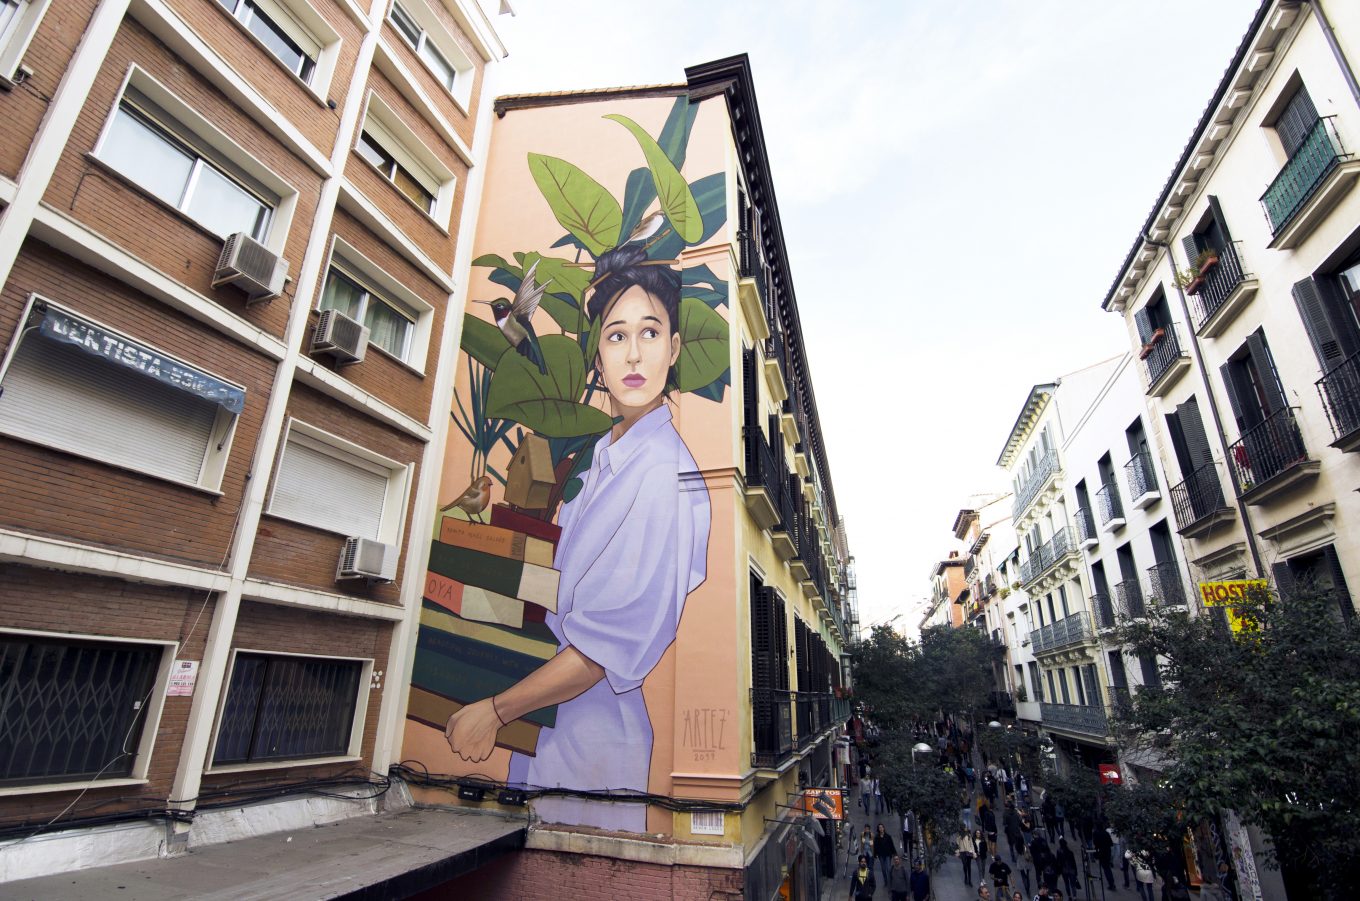 Mural mujer acarreando libros y planta en fachada de edificio